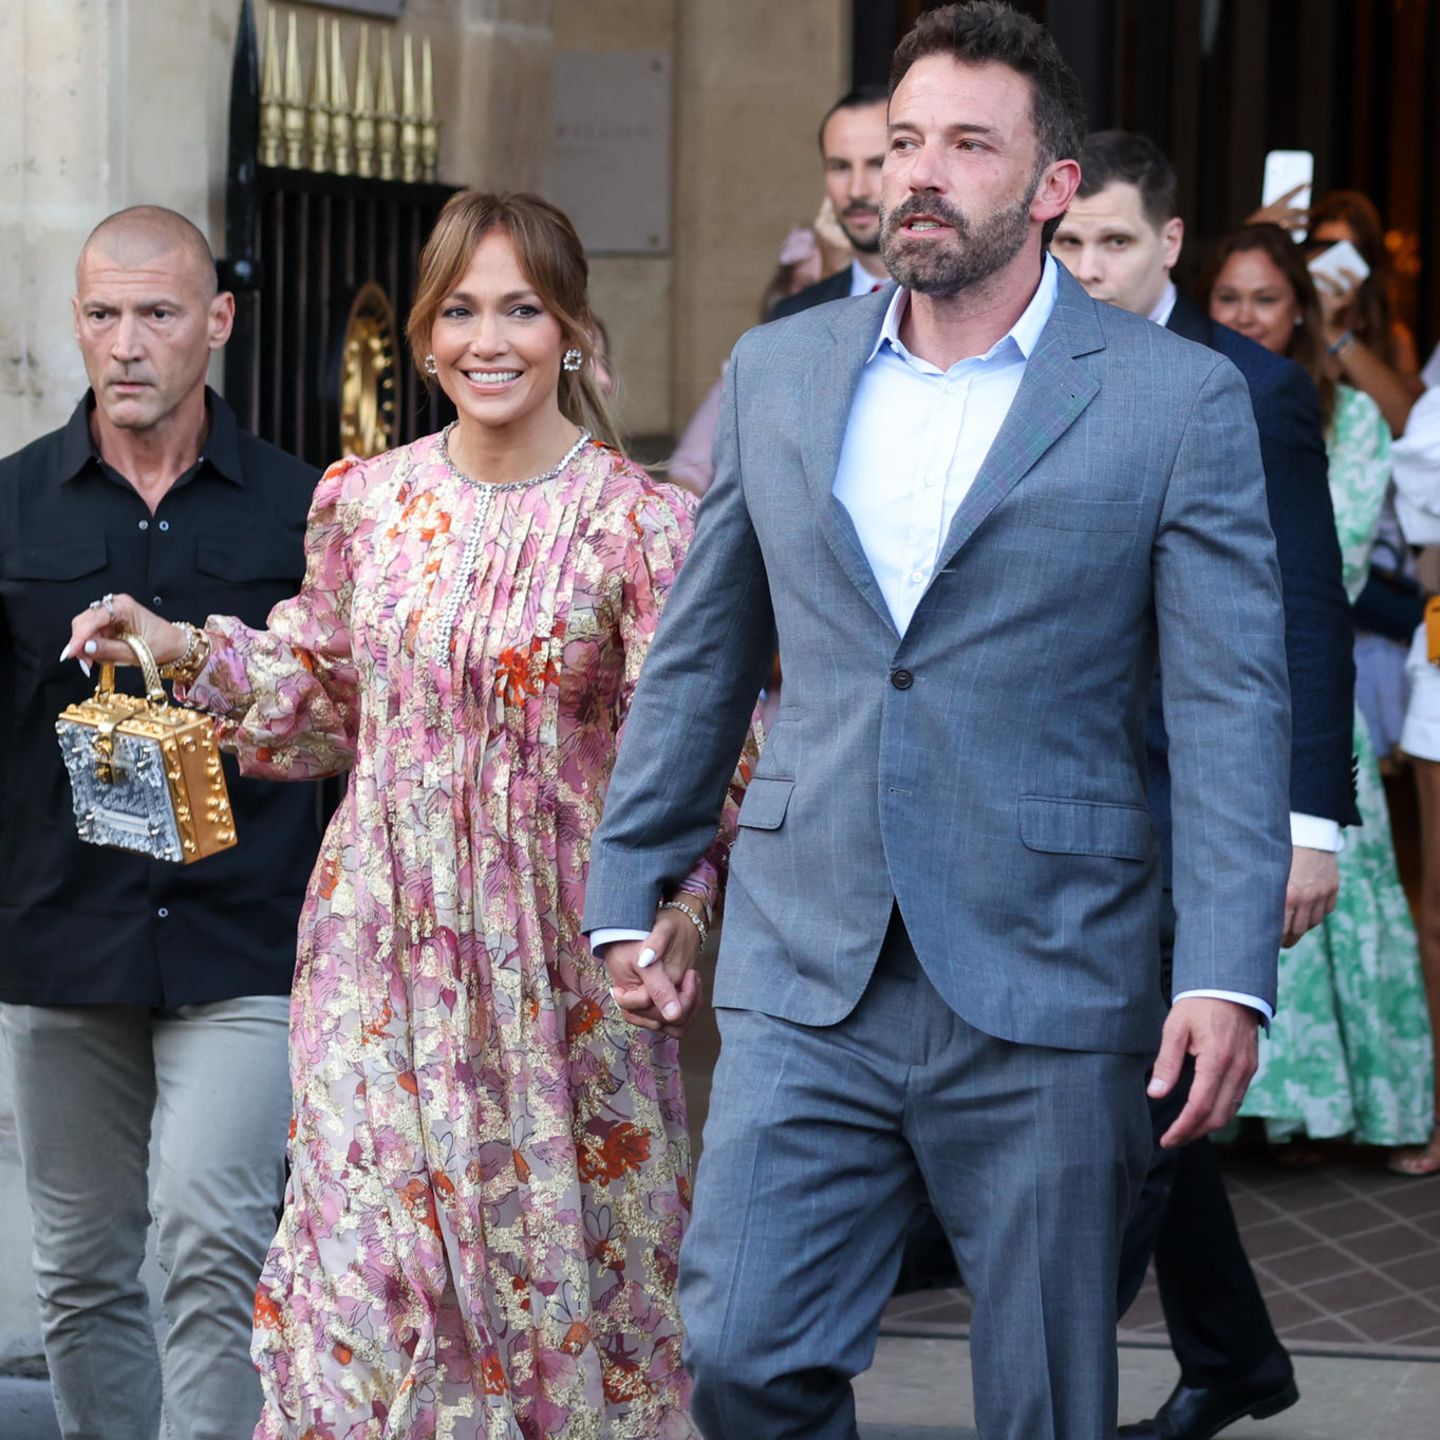 Ein bisschen Boho geht immer: Jennifer Lopez in einem Traum von Maxi-Kleid. Die eckige Statement-Tasche setzt einen gekonnten Kontrast zum Romantik-Look des Kleides.